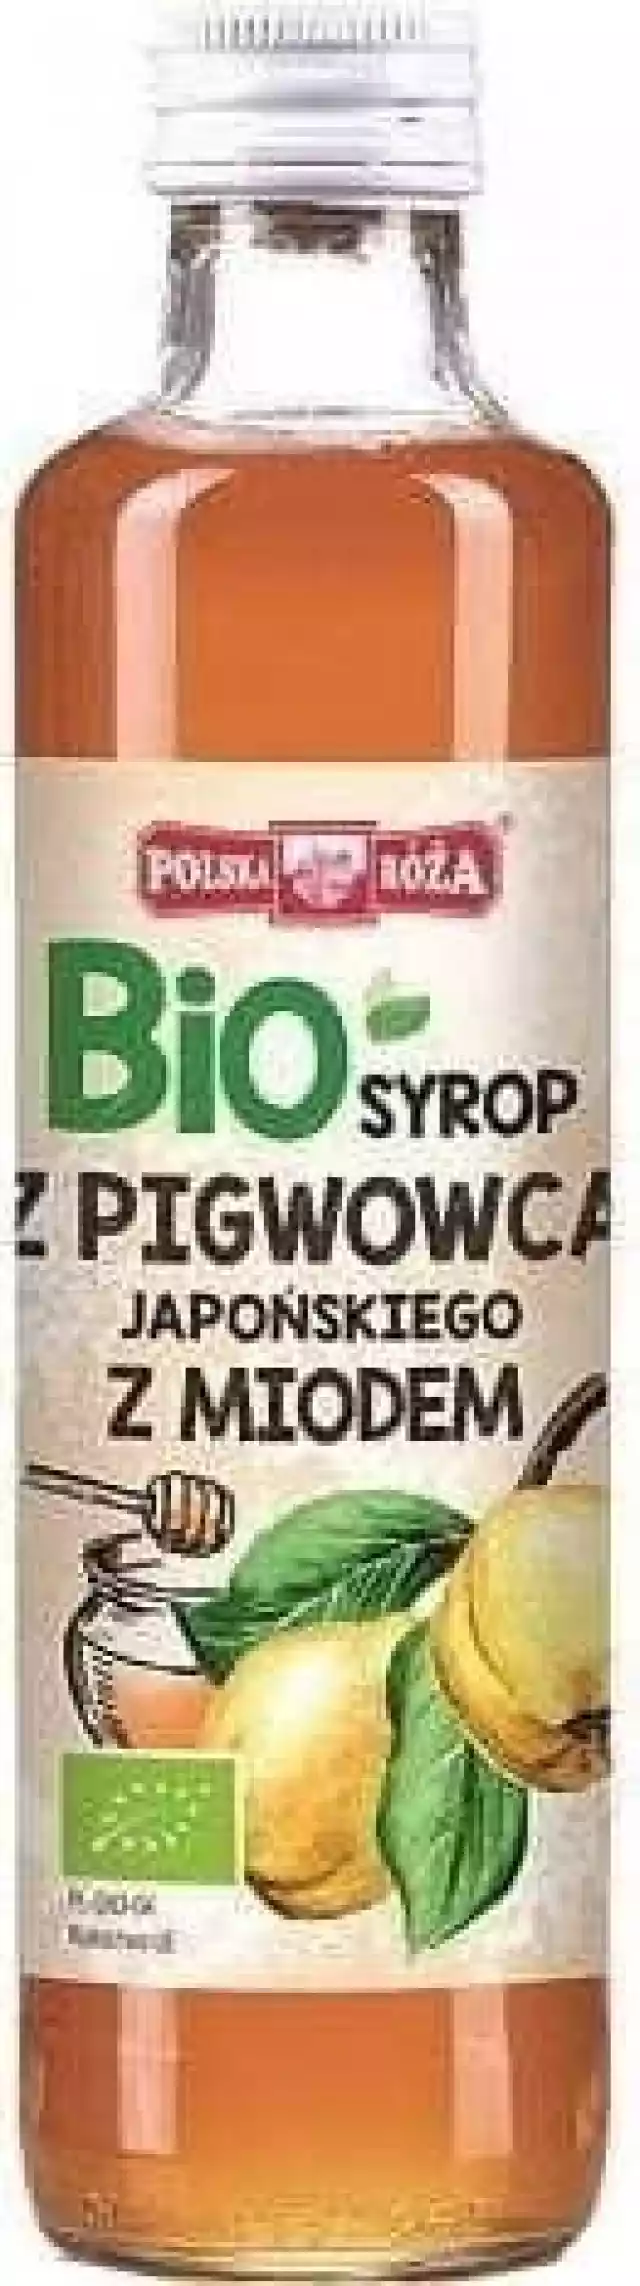 Syrop Z Pigwowca Z Miodem Bio 250 Ml - Polska Róza